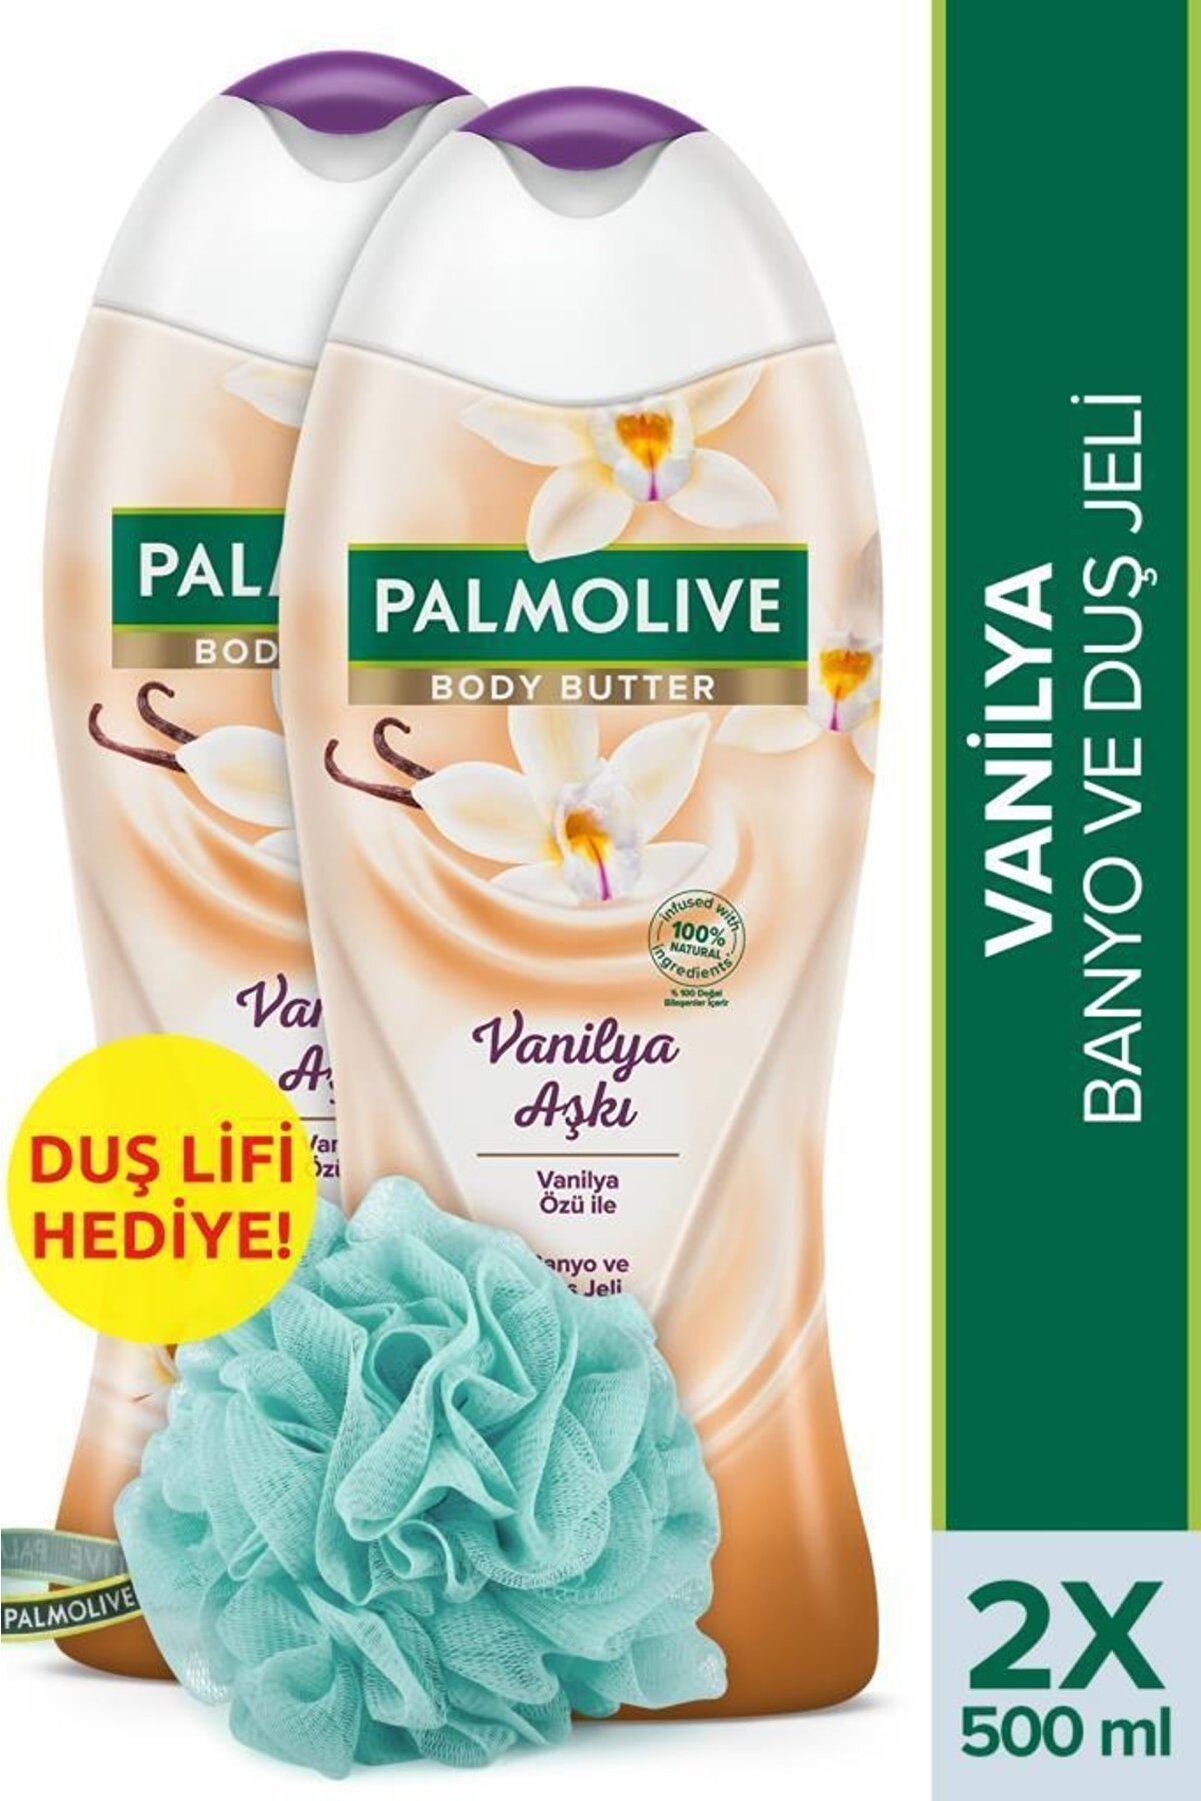 Palmolive Body Butter Vanilya Aşkı Banyo ve Duş Jeli 500 ml x 2 Adet + Duş Lifi Hediye